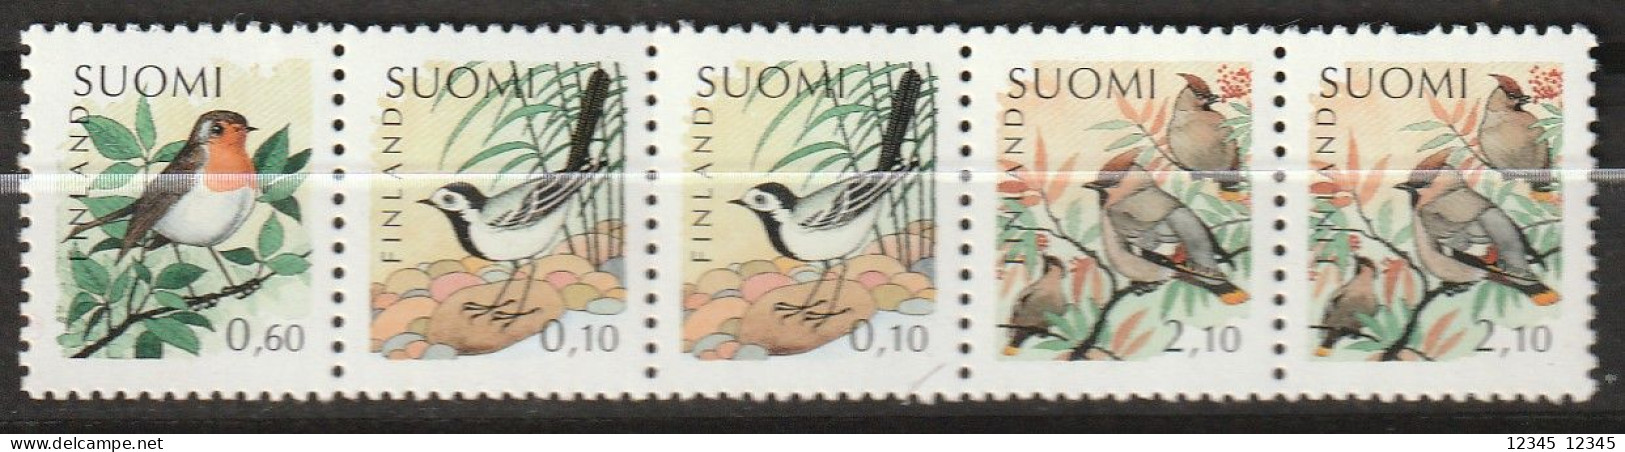 Finland 1992, Postfris MNH, Birds - Cuadernillos